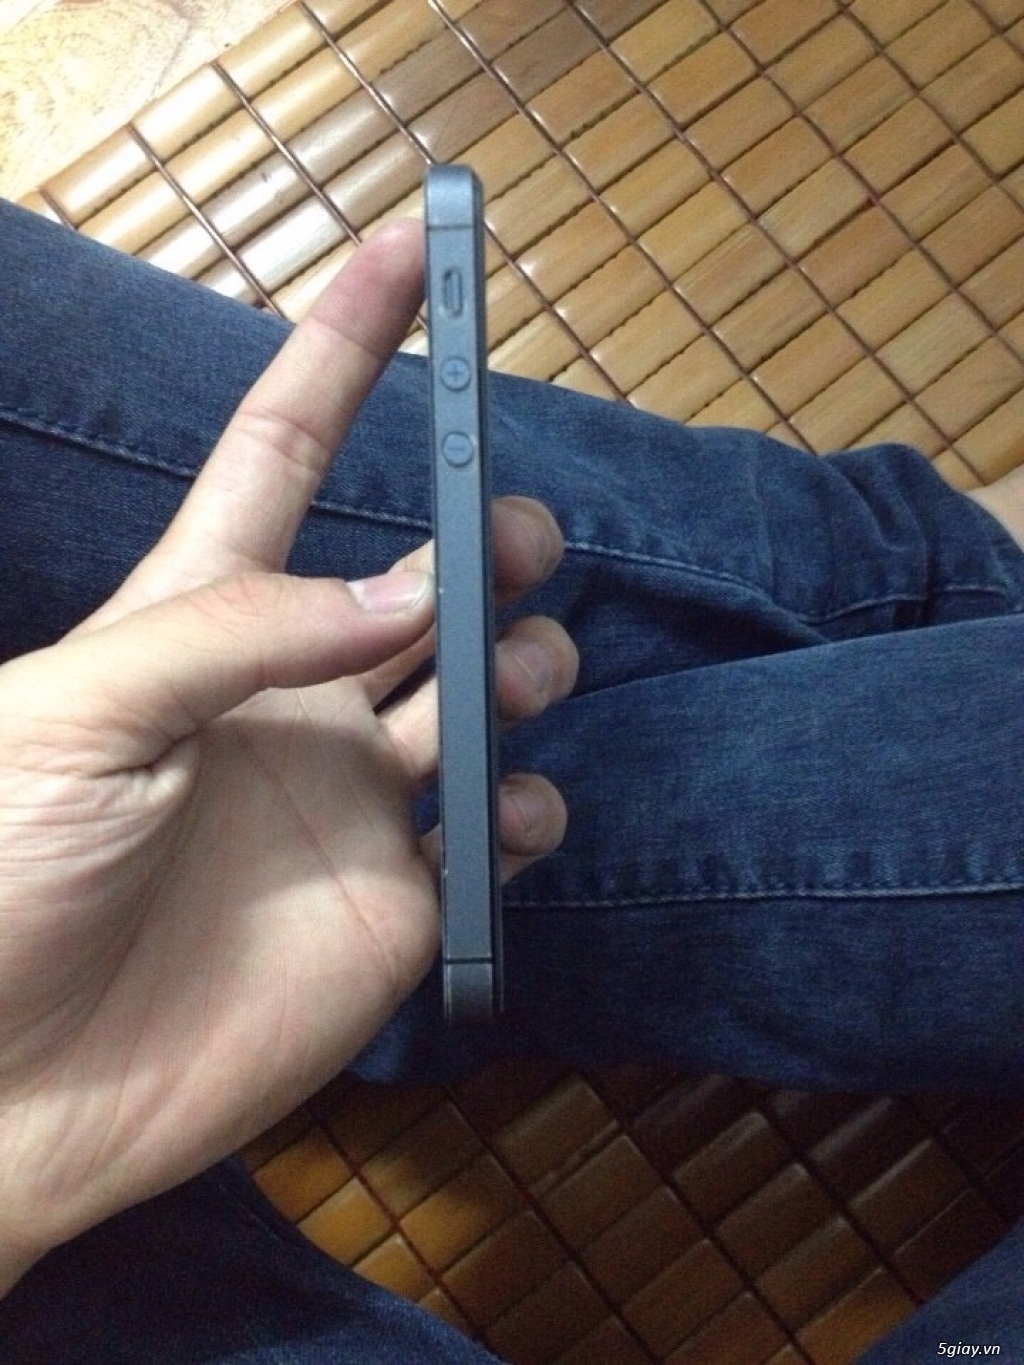 Bán iphone 5 black 16G QT 98-9 - 3